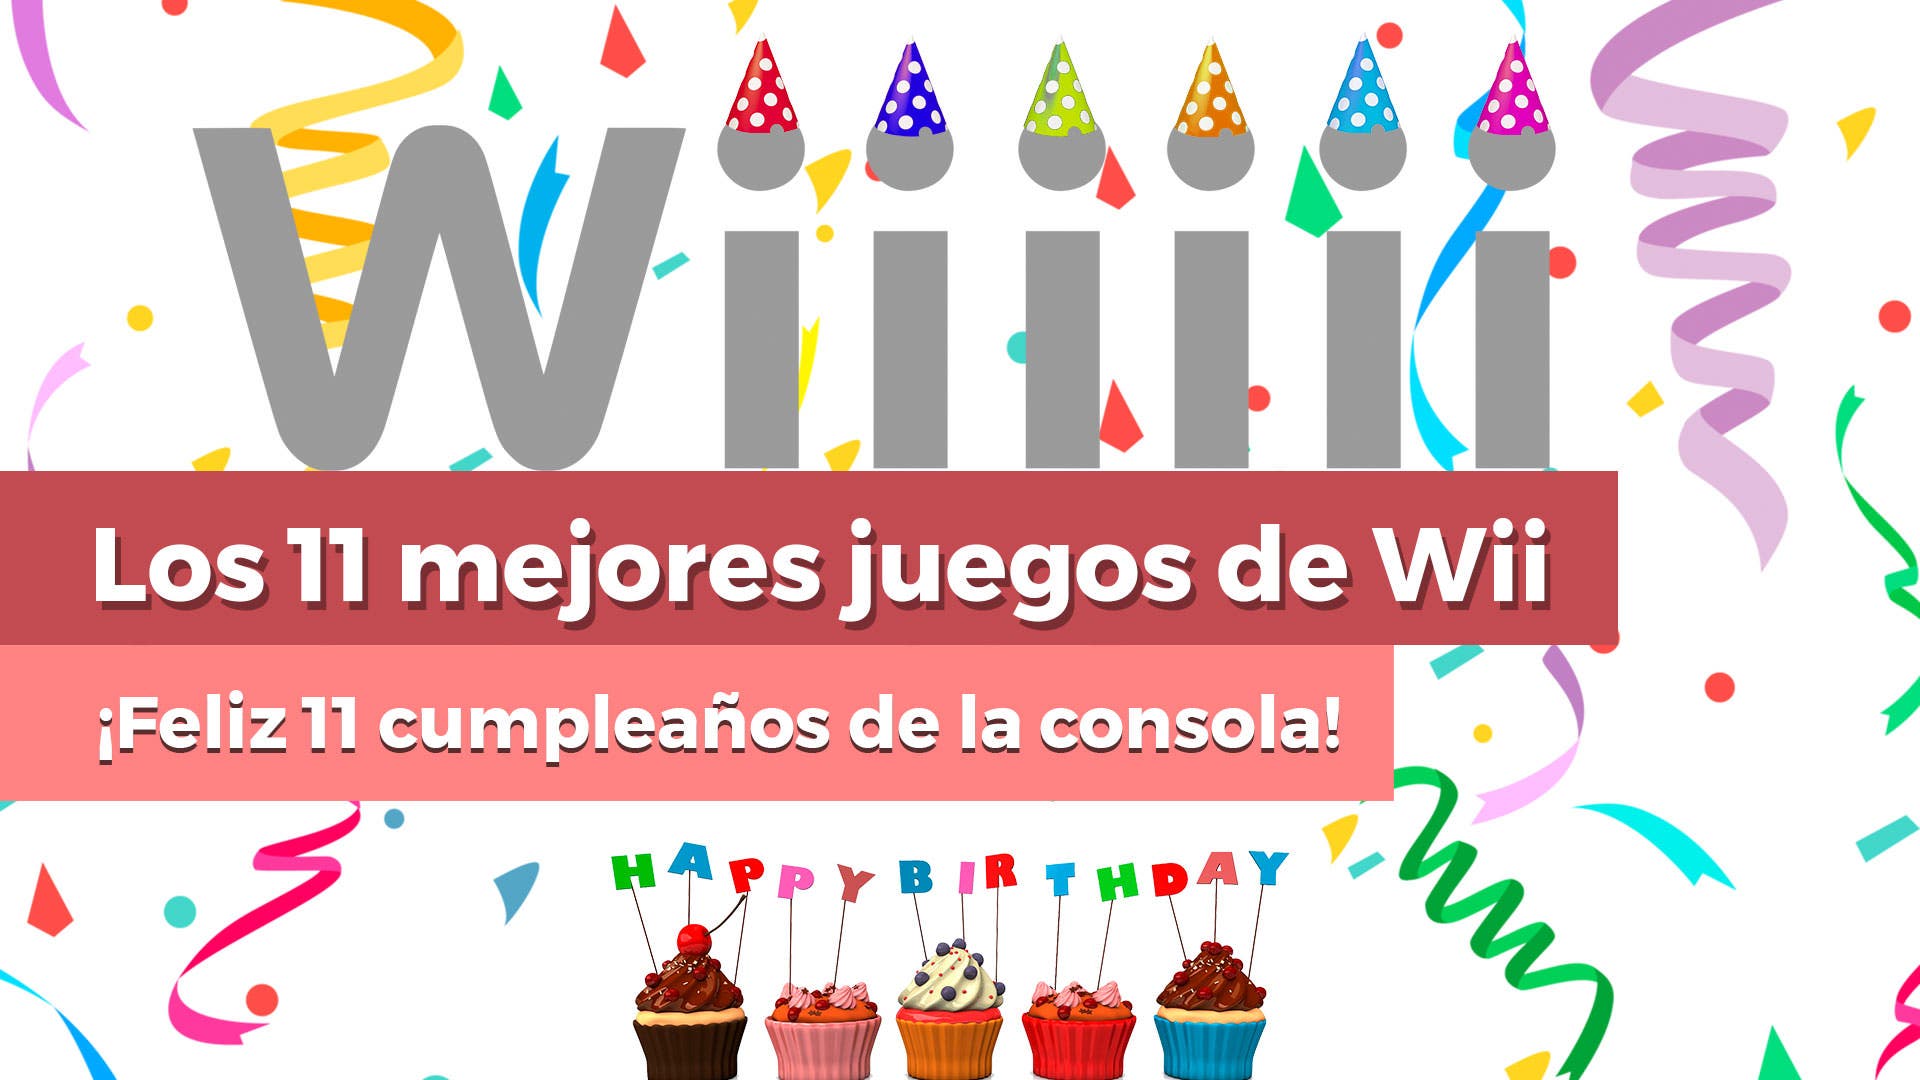 [Vídeo] ¡Feliz cumpleaños! Los 11 mejores juegos de Wii